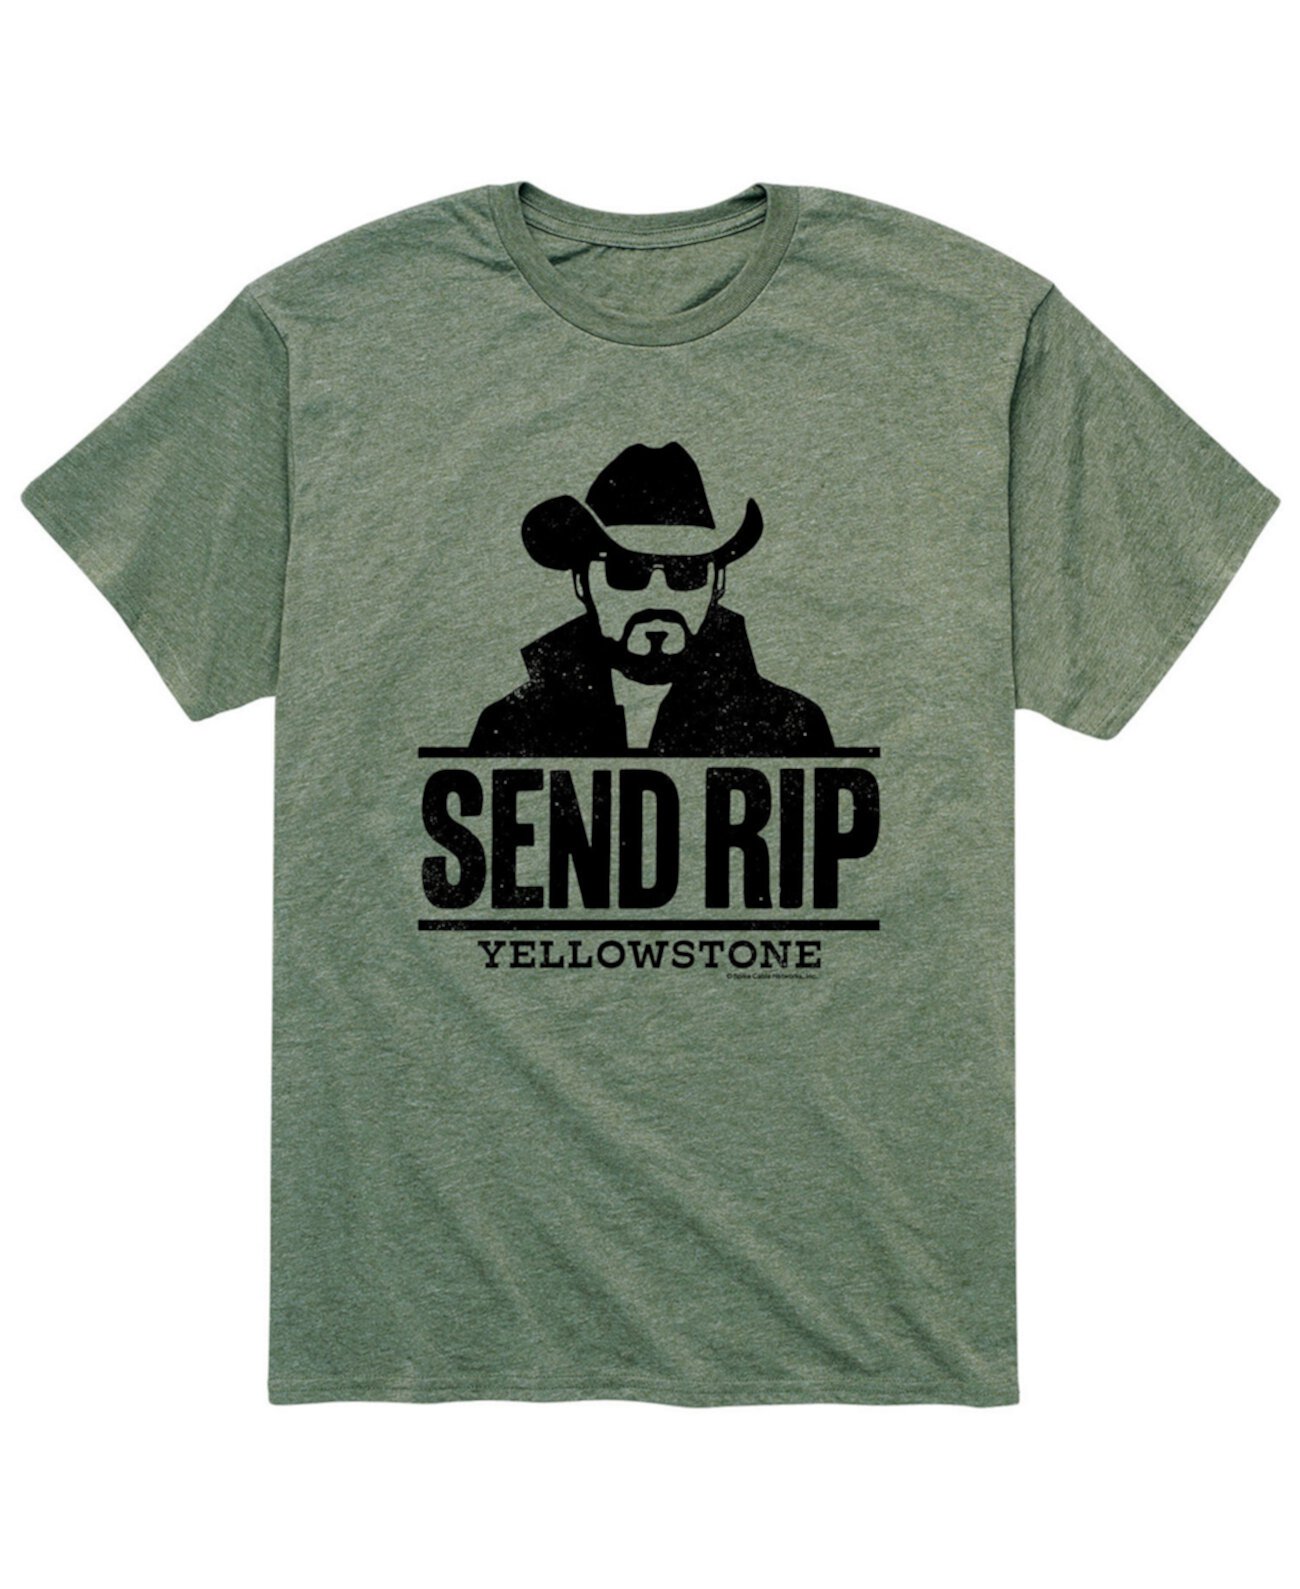 Мужская футболка Yellowstone Send Rip AIRWAVES